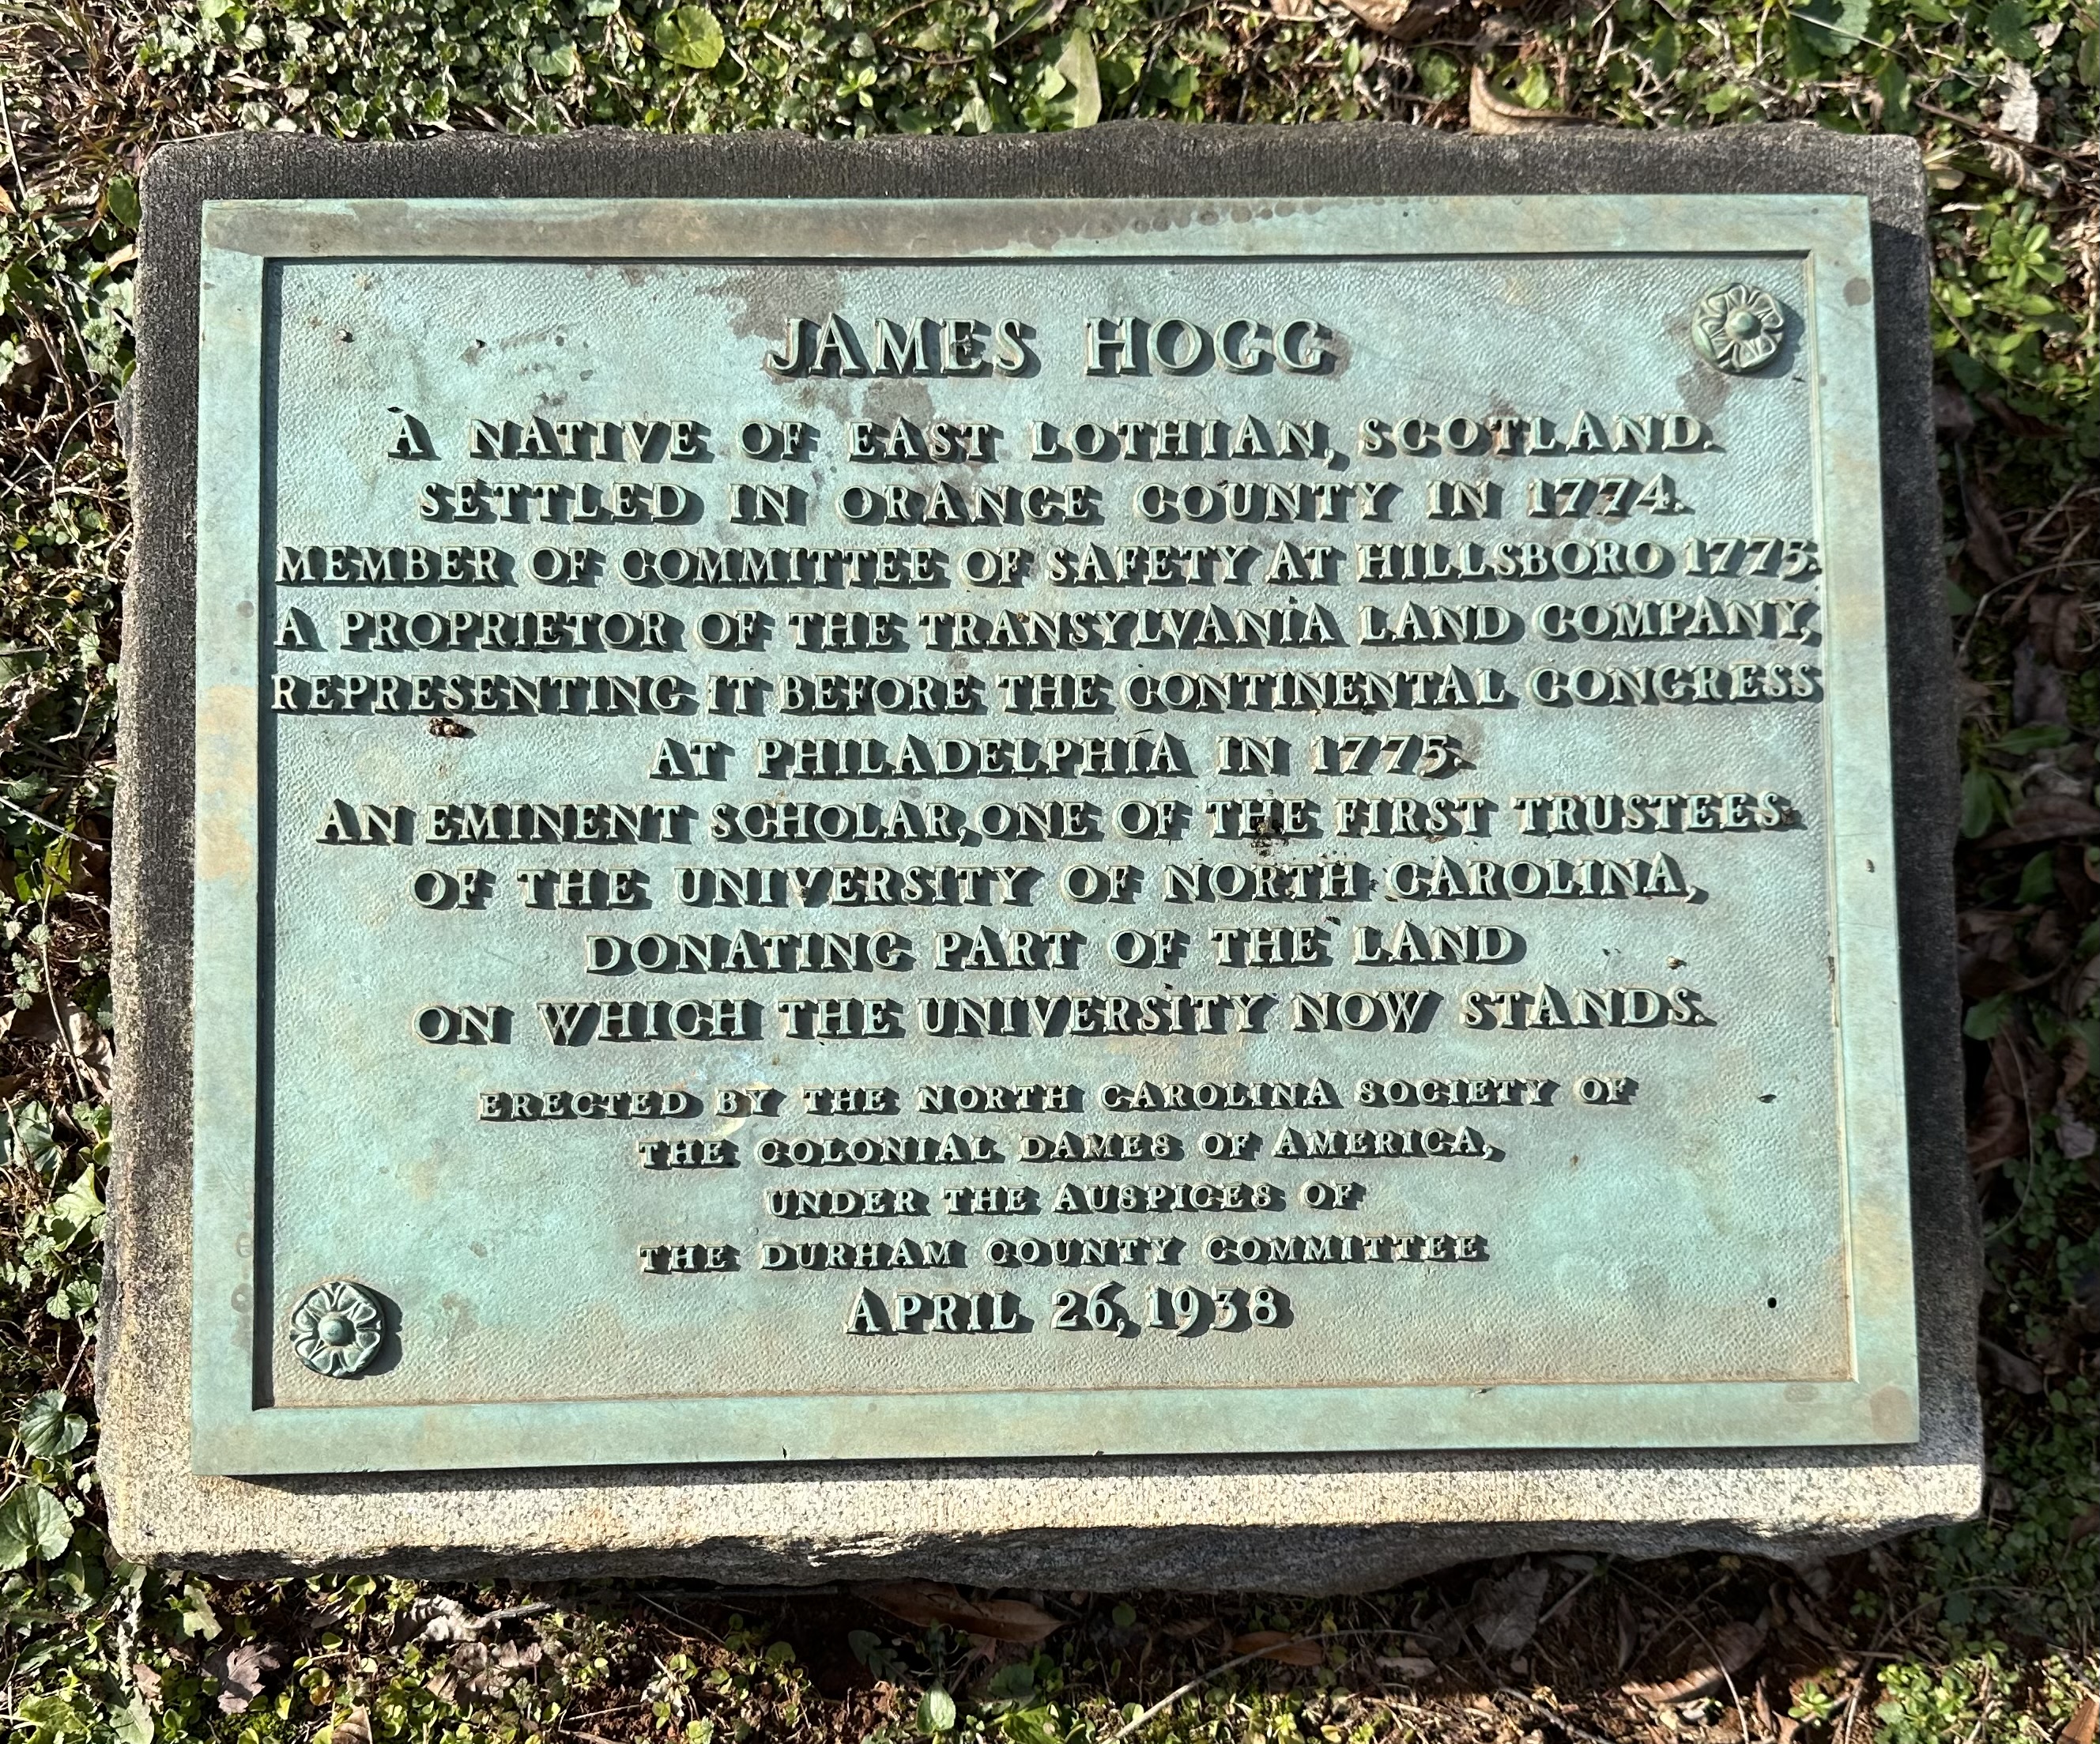 Hogg marker in Hillsborough